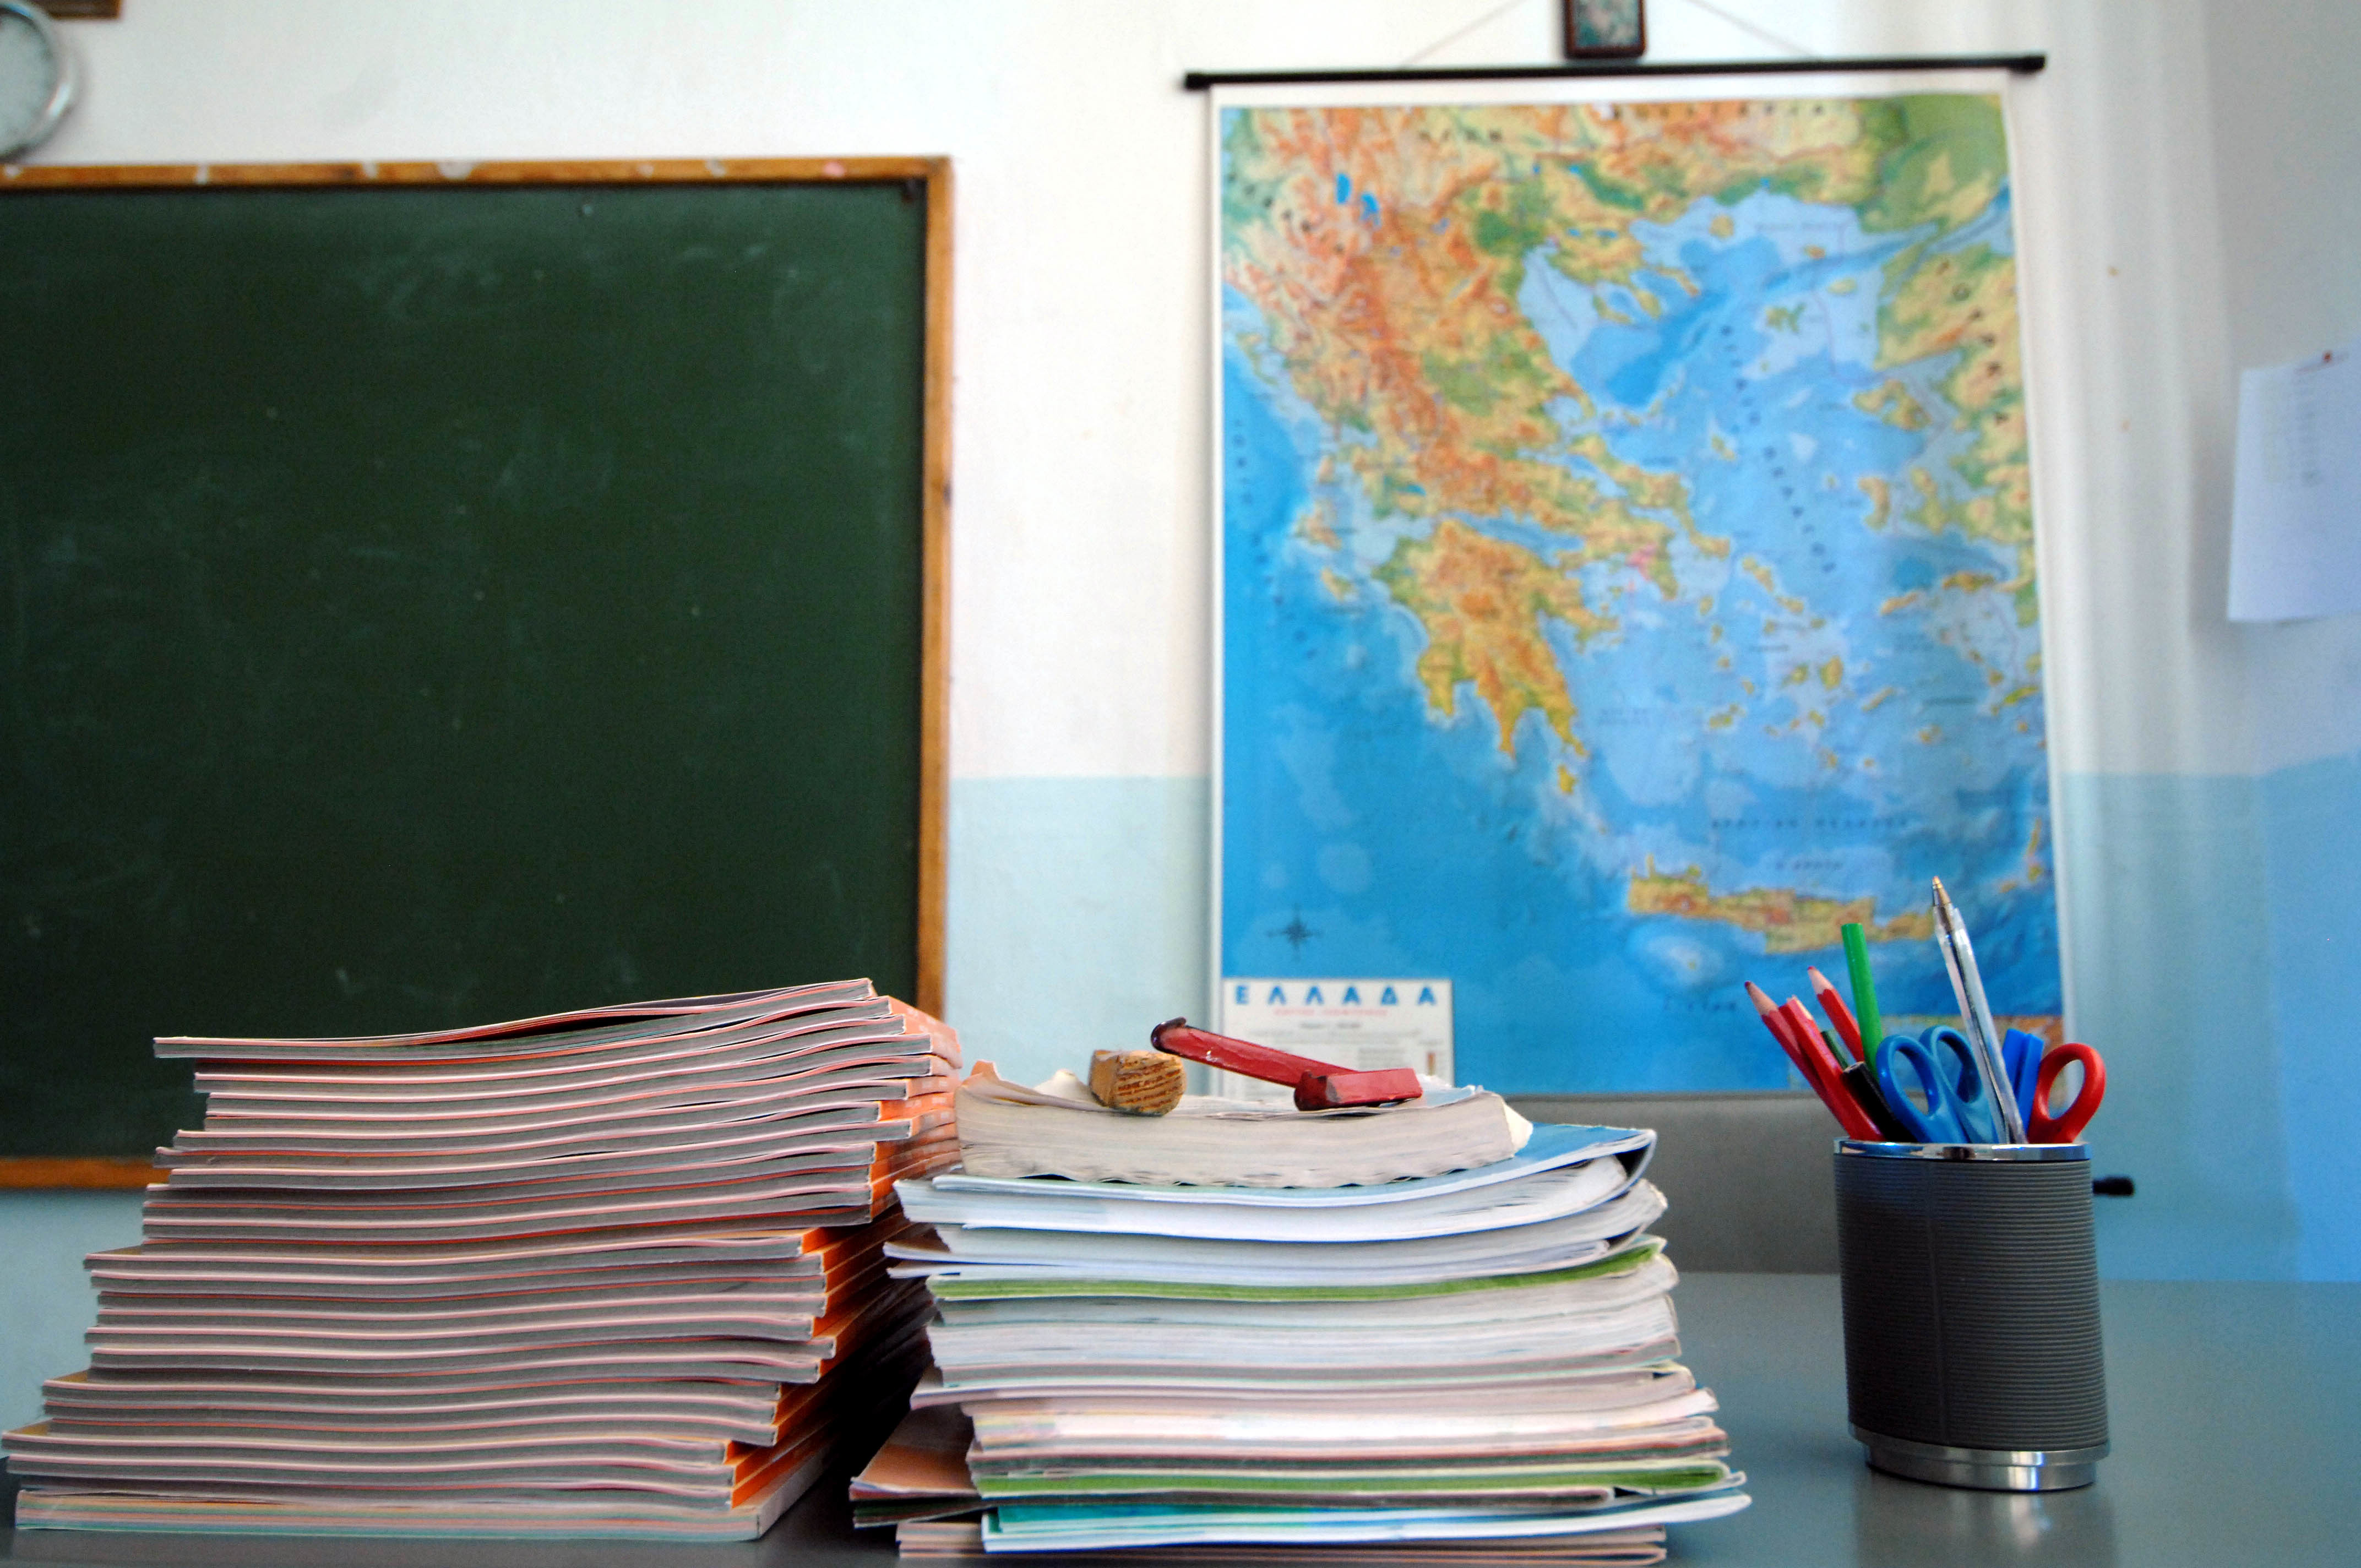 Απουσιολόγιο για δασκάλους και καθηγητές – Θα καταγράφεται η ώρα άφιξης και αναχώρησης κάθε εκπαιδευτικού